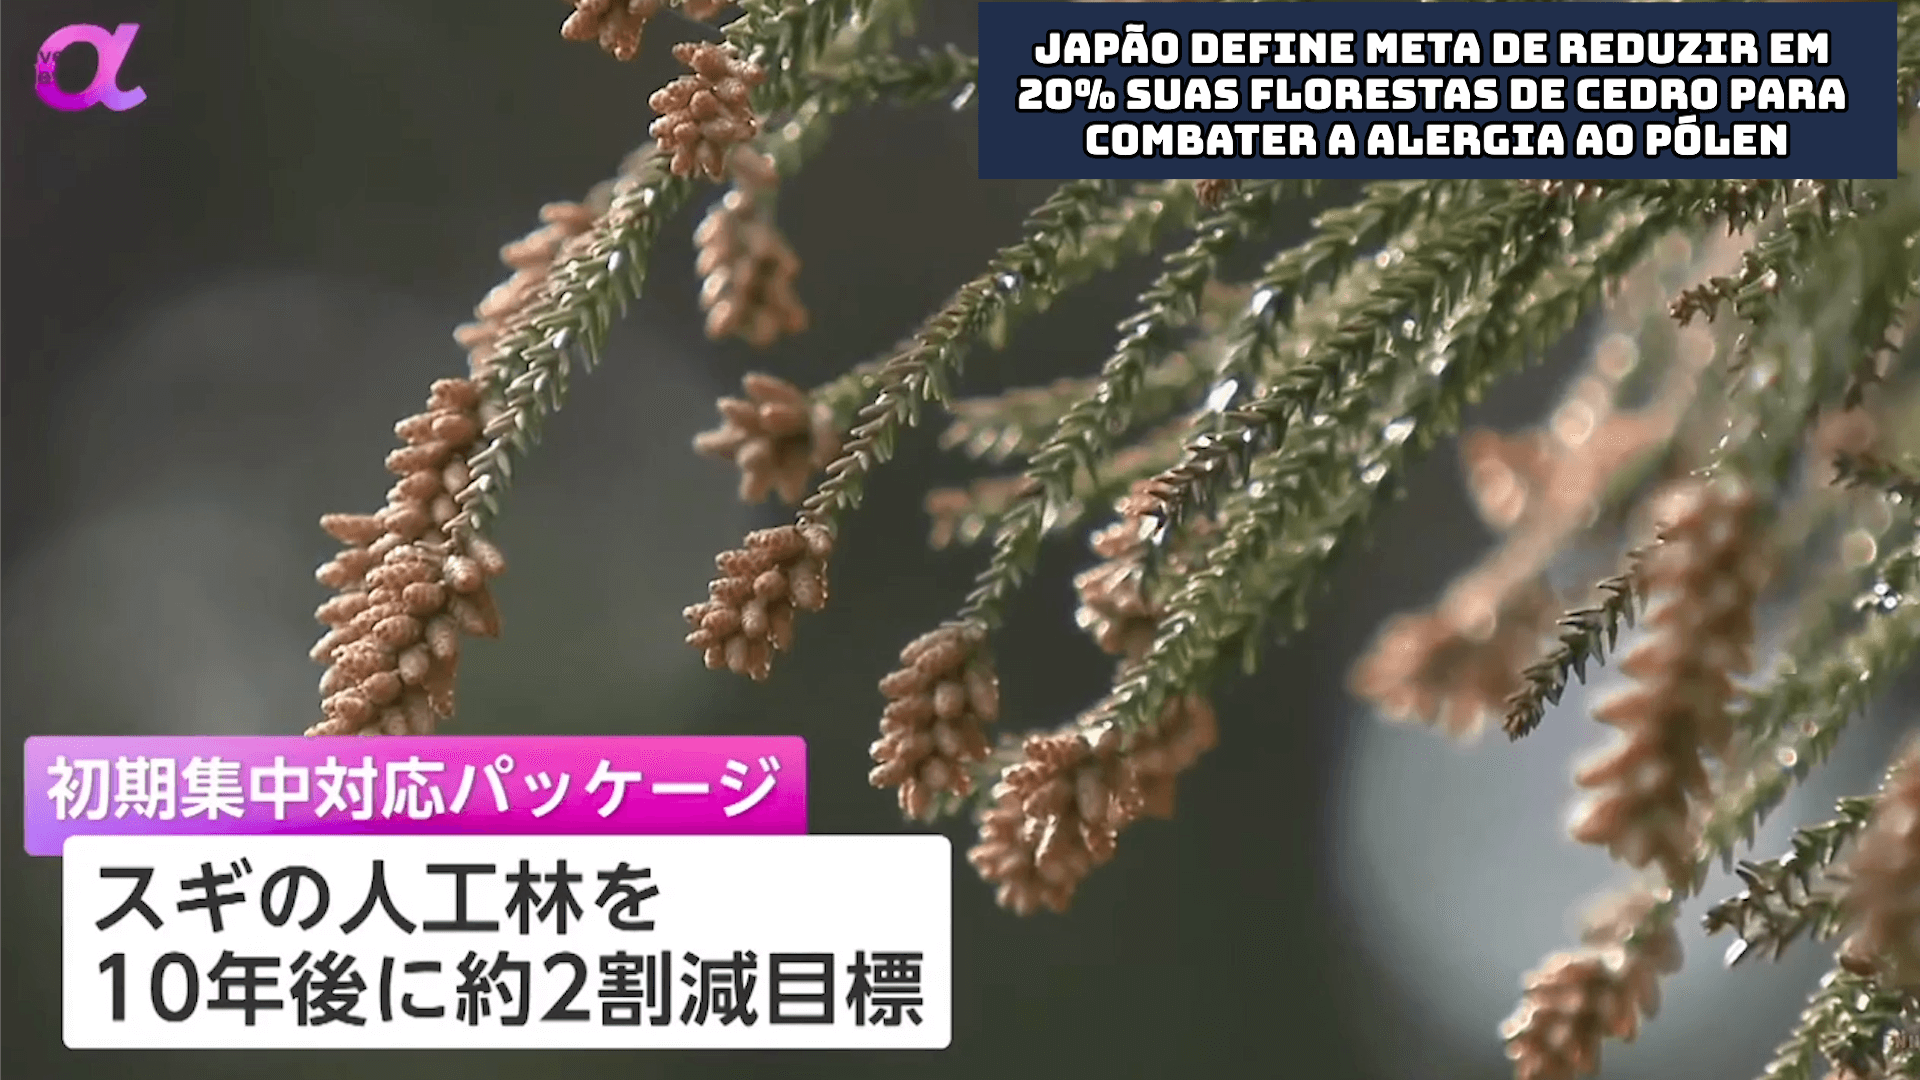 Japão define meta de reduzir em 20% suas florestas de cedro para combater a alergia ao pólen